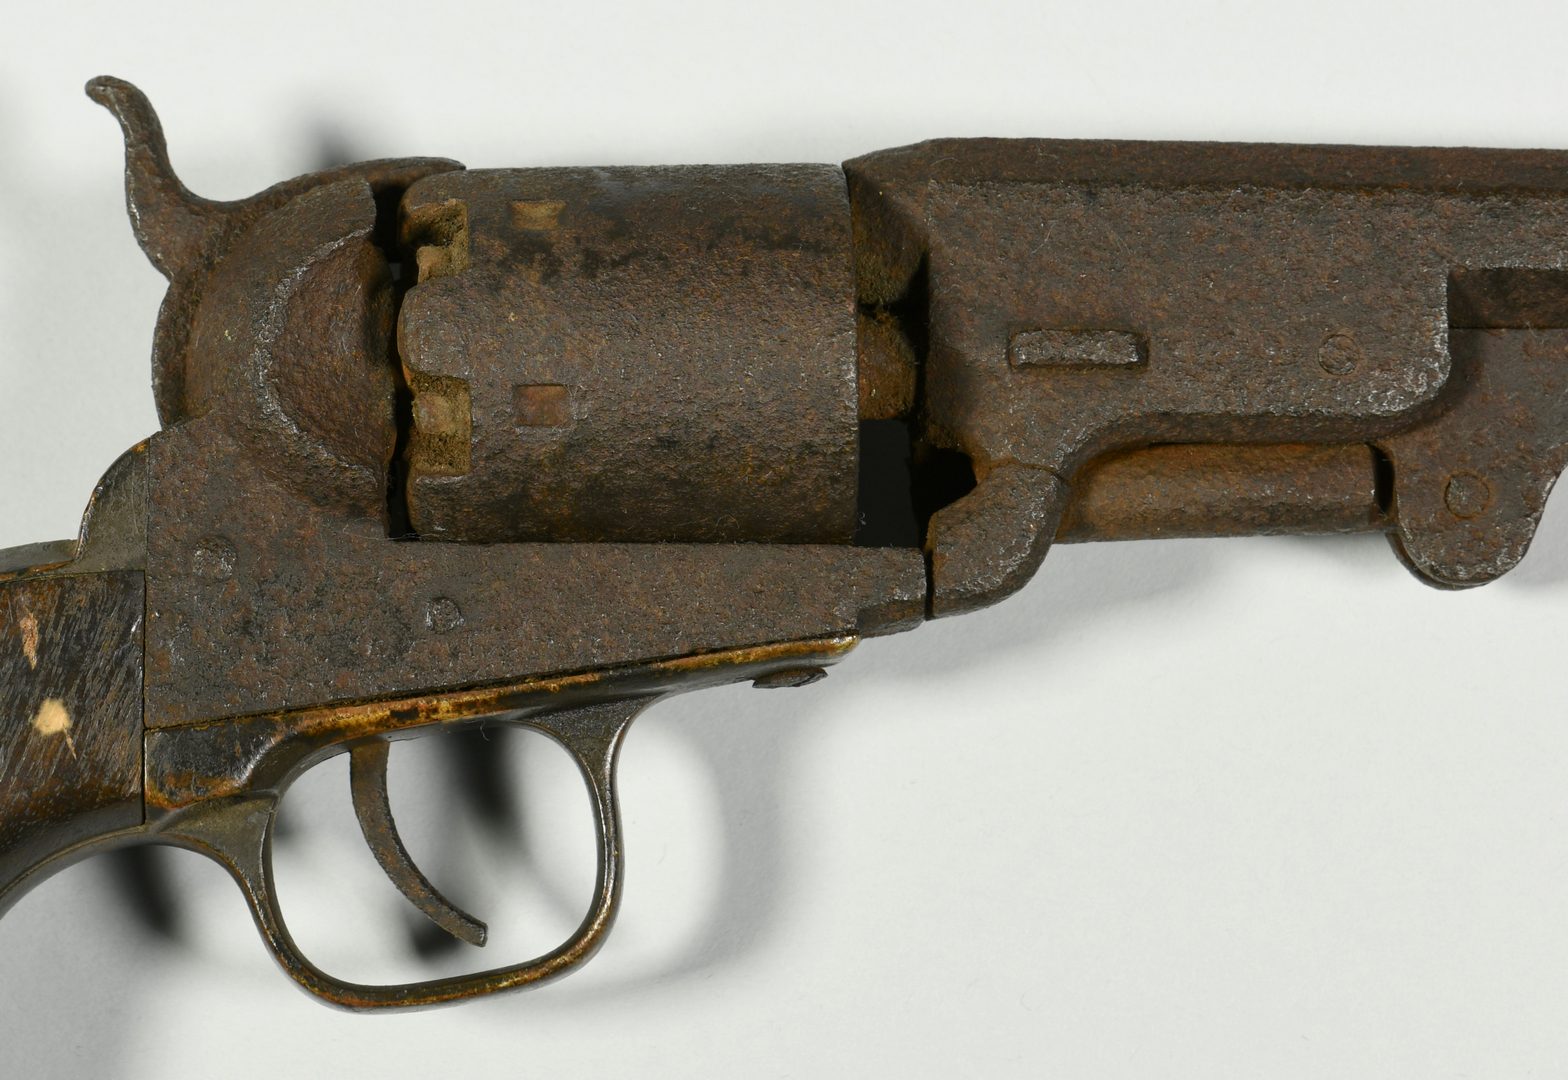 Lot 292: 2 Civil War Era Pistols, Devon Farm